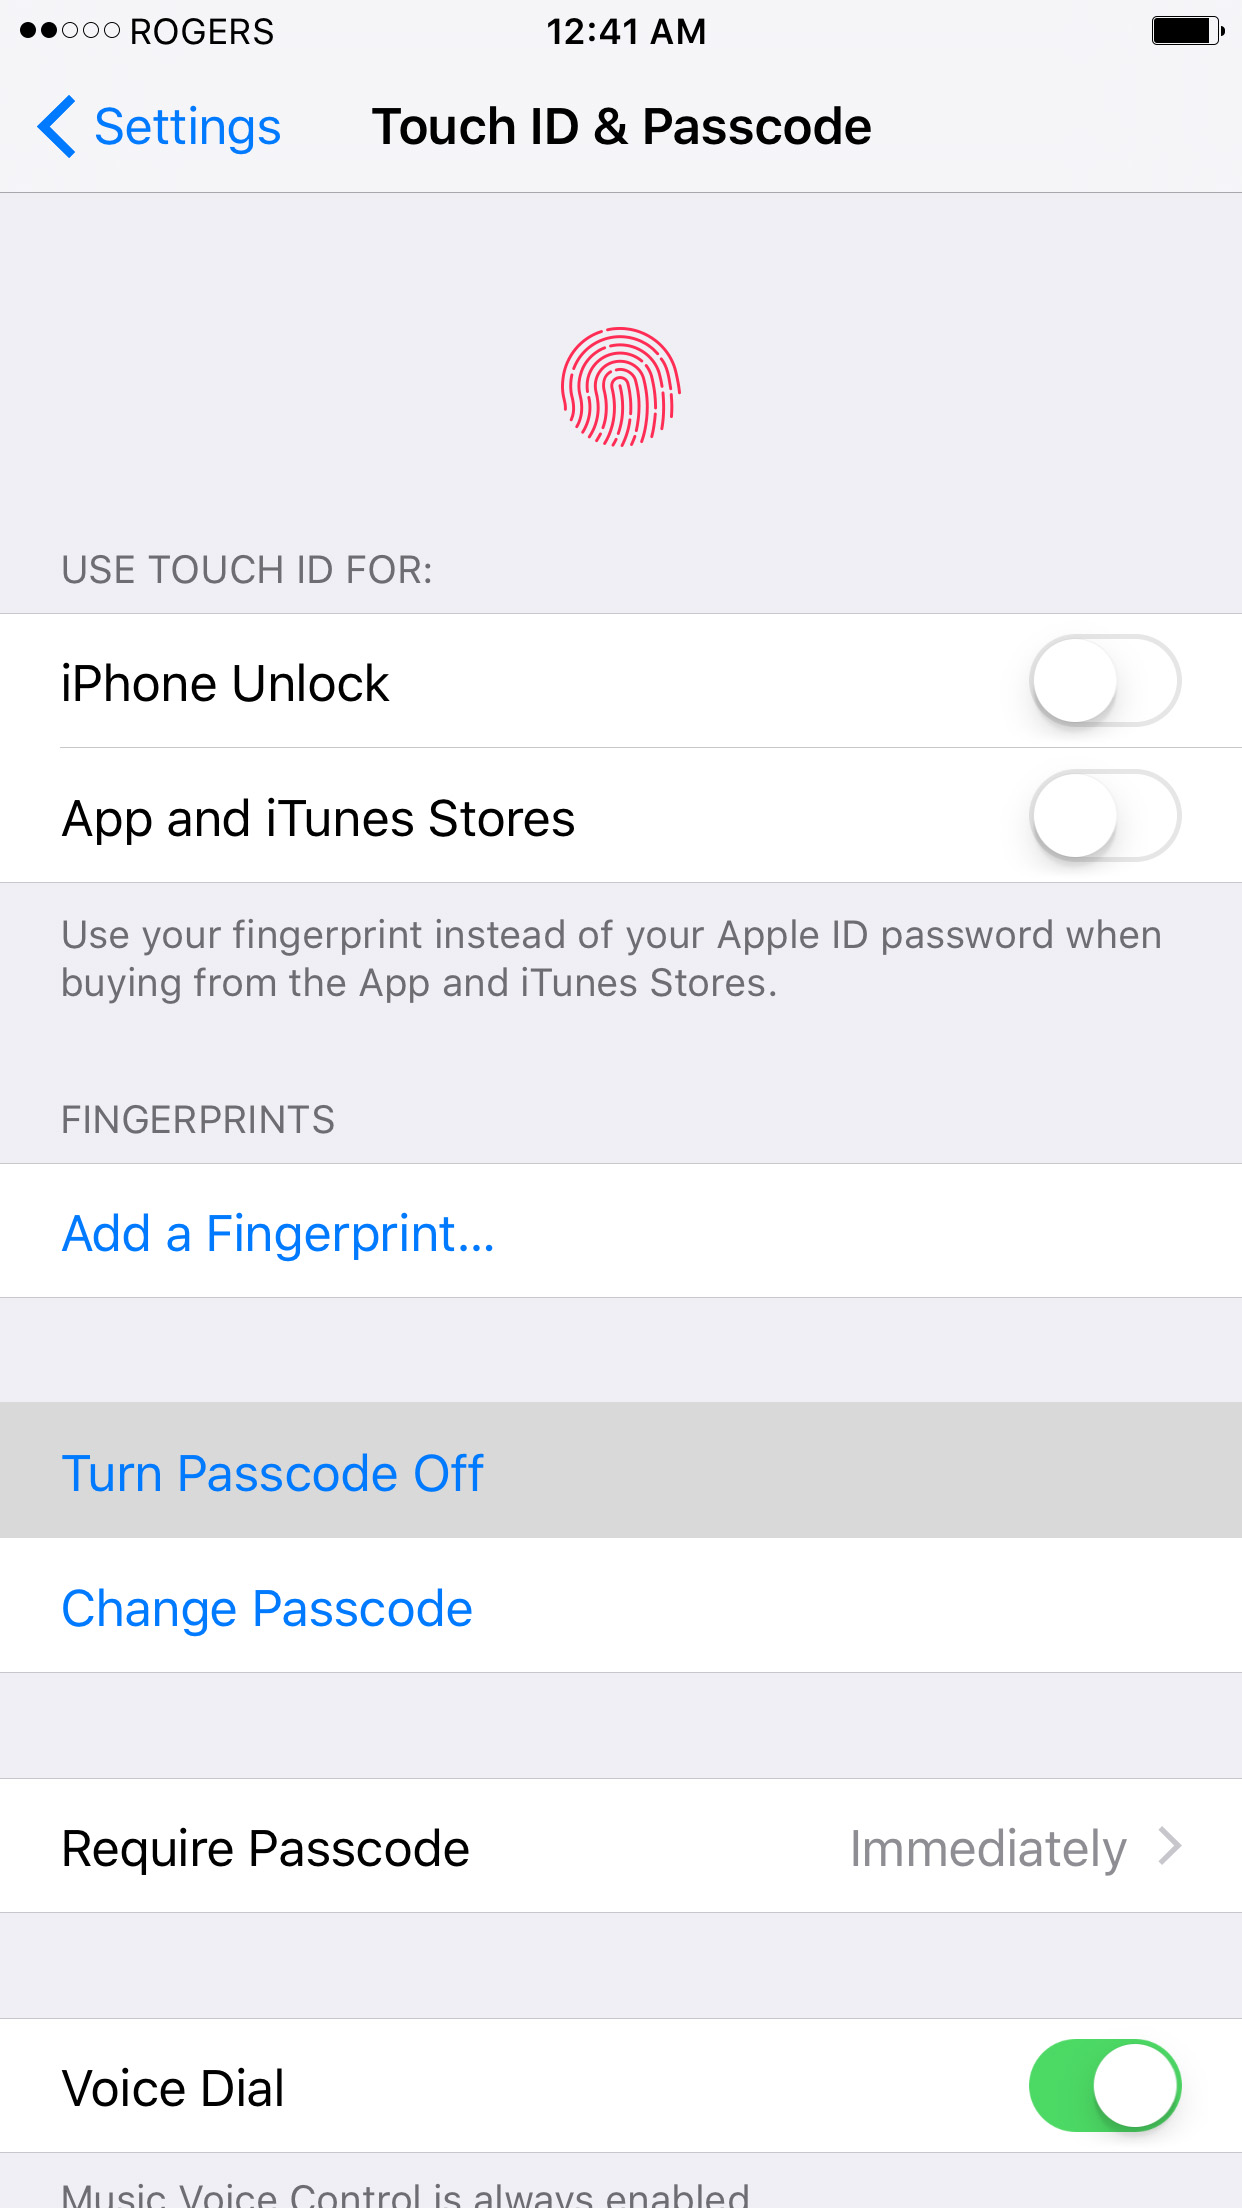 Πώς να κάνετε Jailbreak το iPhone σας,στην έκδοση iOS 9 (Windows) [9.0.2]